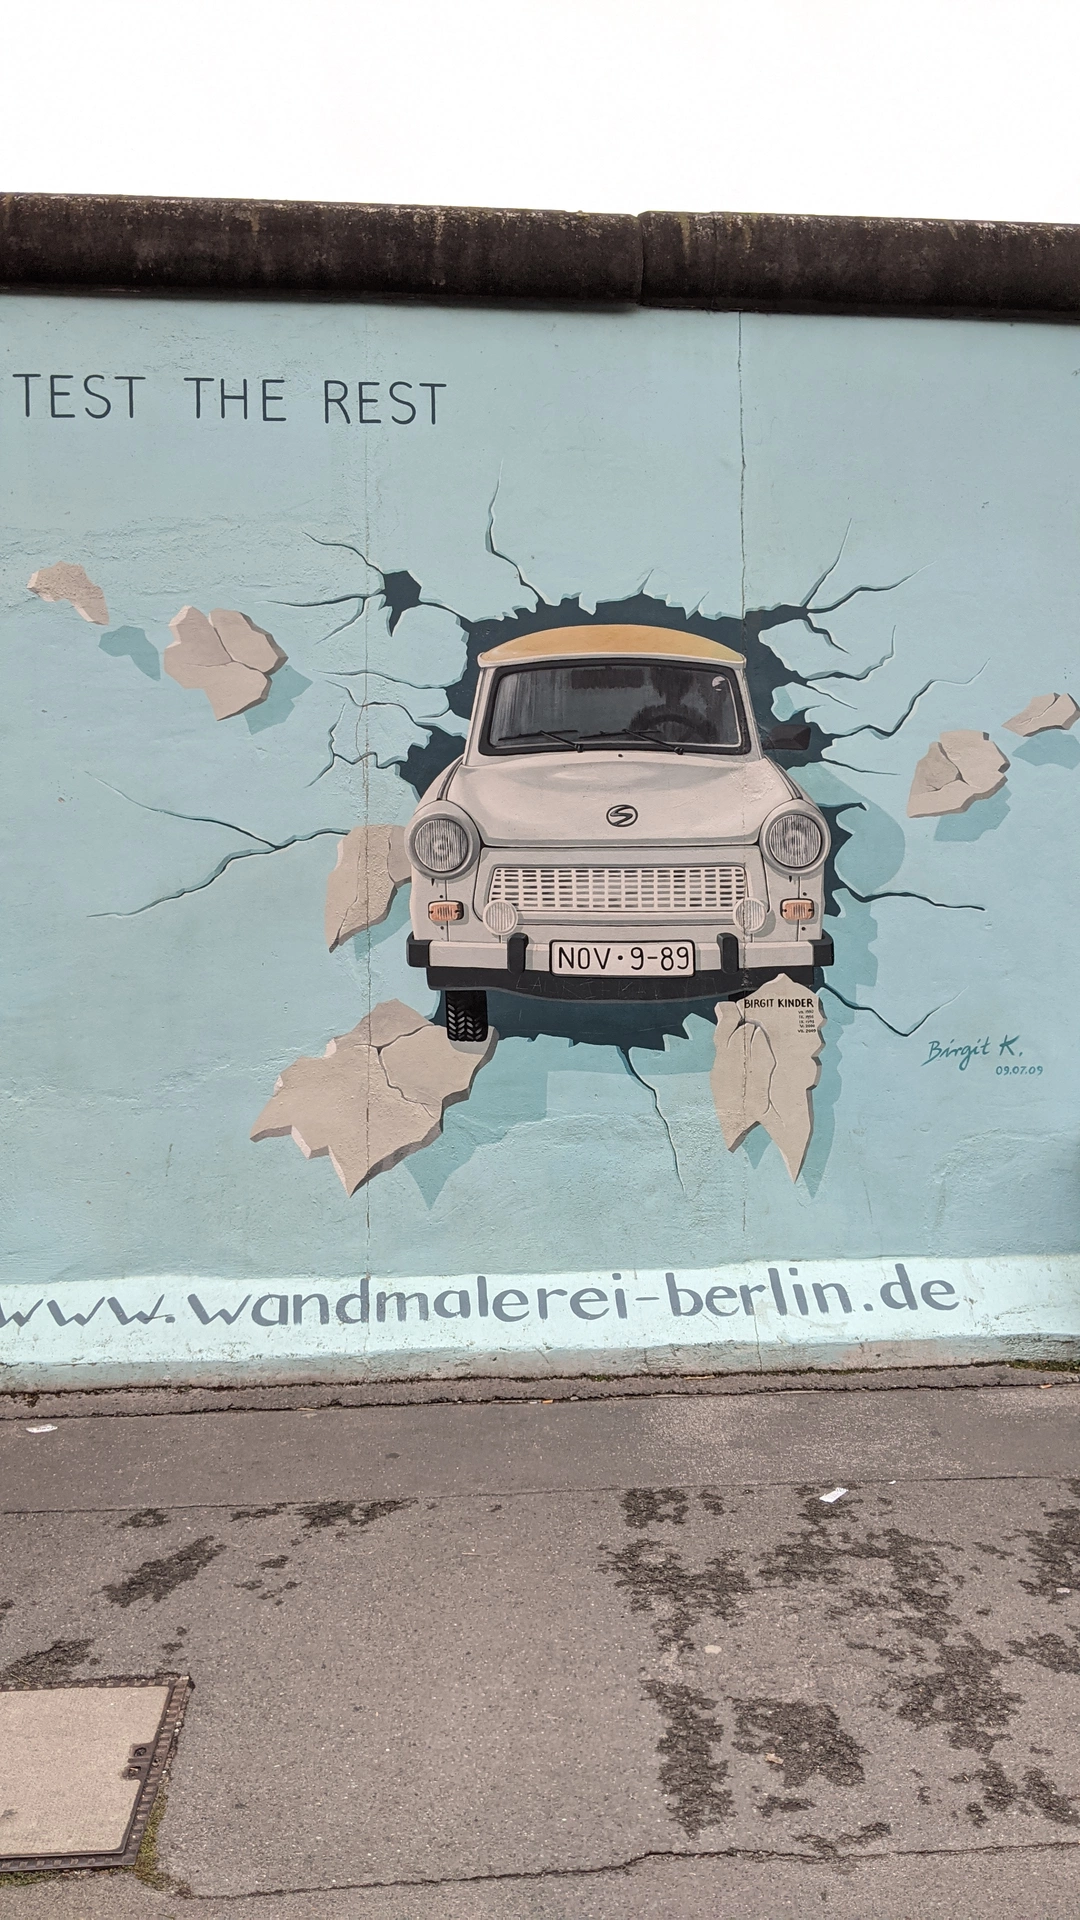 Oeuvre de Street Art réalisée par Birgit Kinder à Berlin